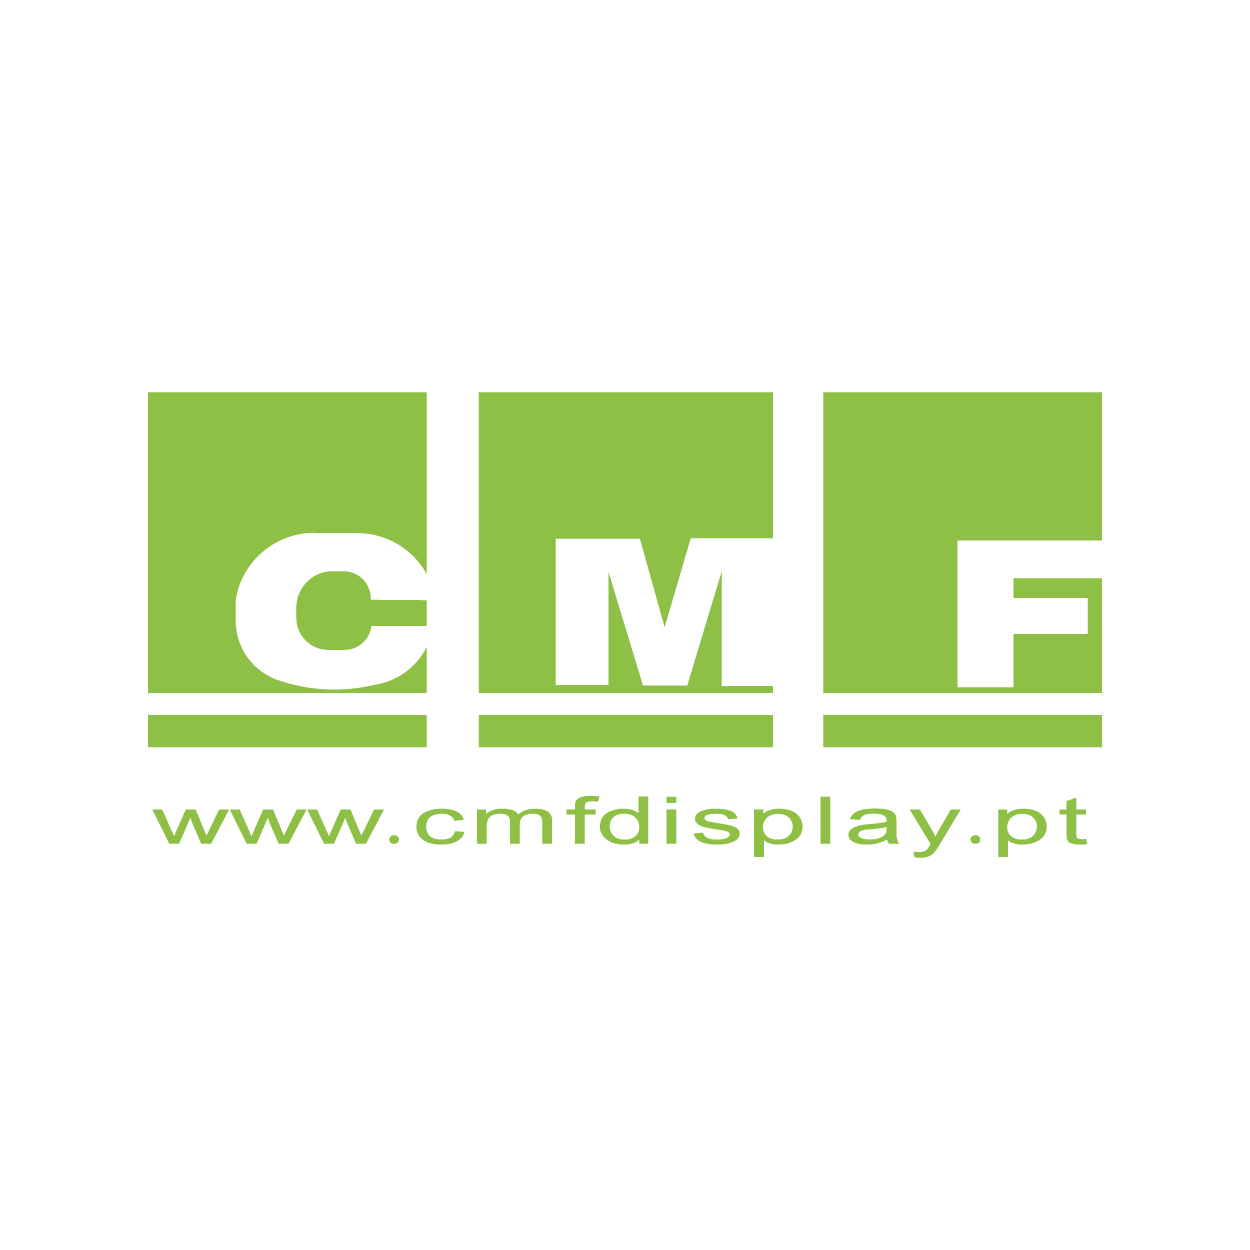 logo_cmf